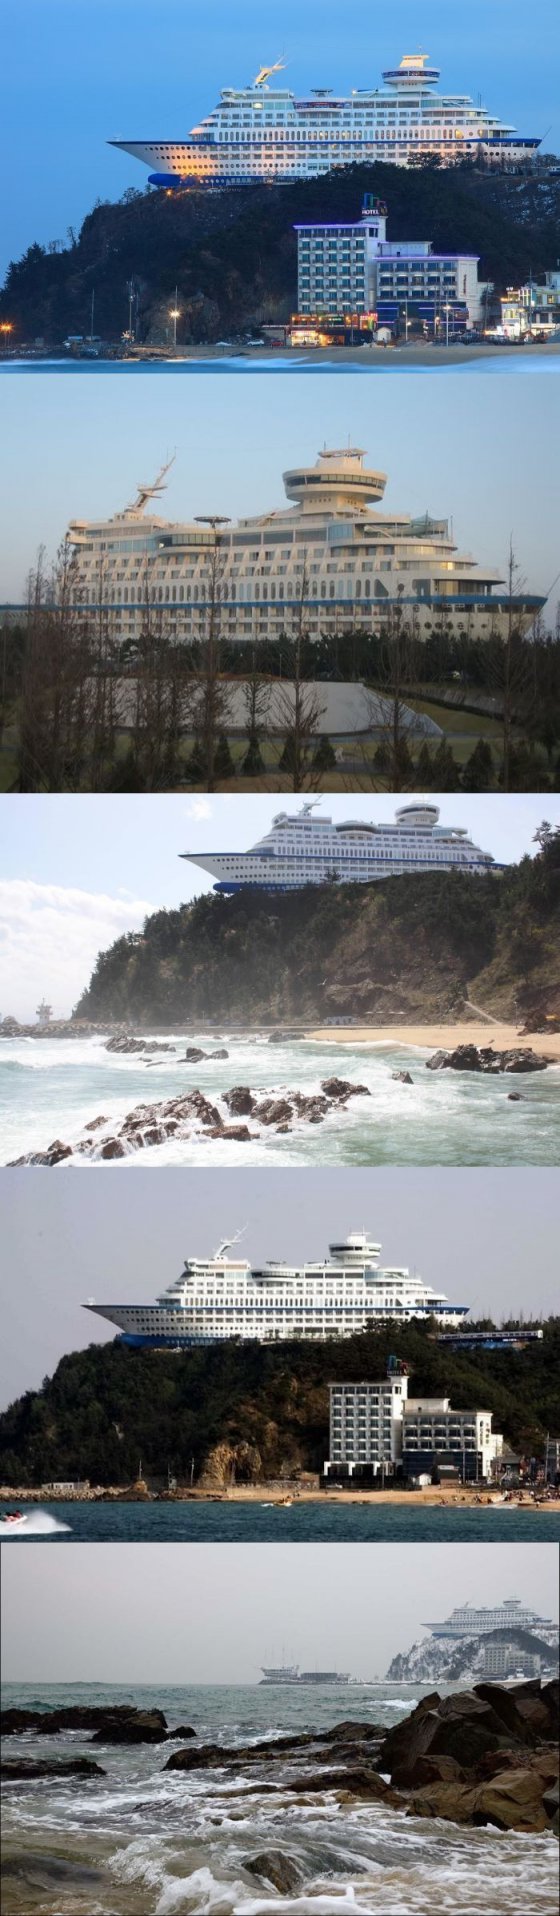 გასაოცარი სასტუმრო სამხრეთ კორეაში,აშენებული კლდეზე- Sun Cruise Hotel